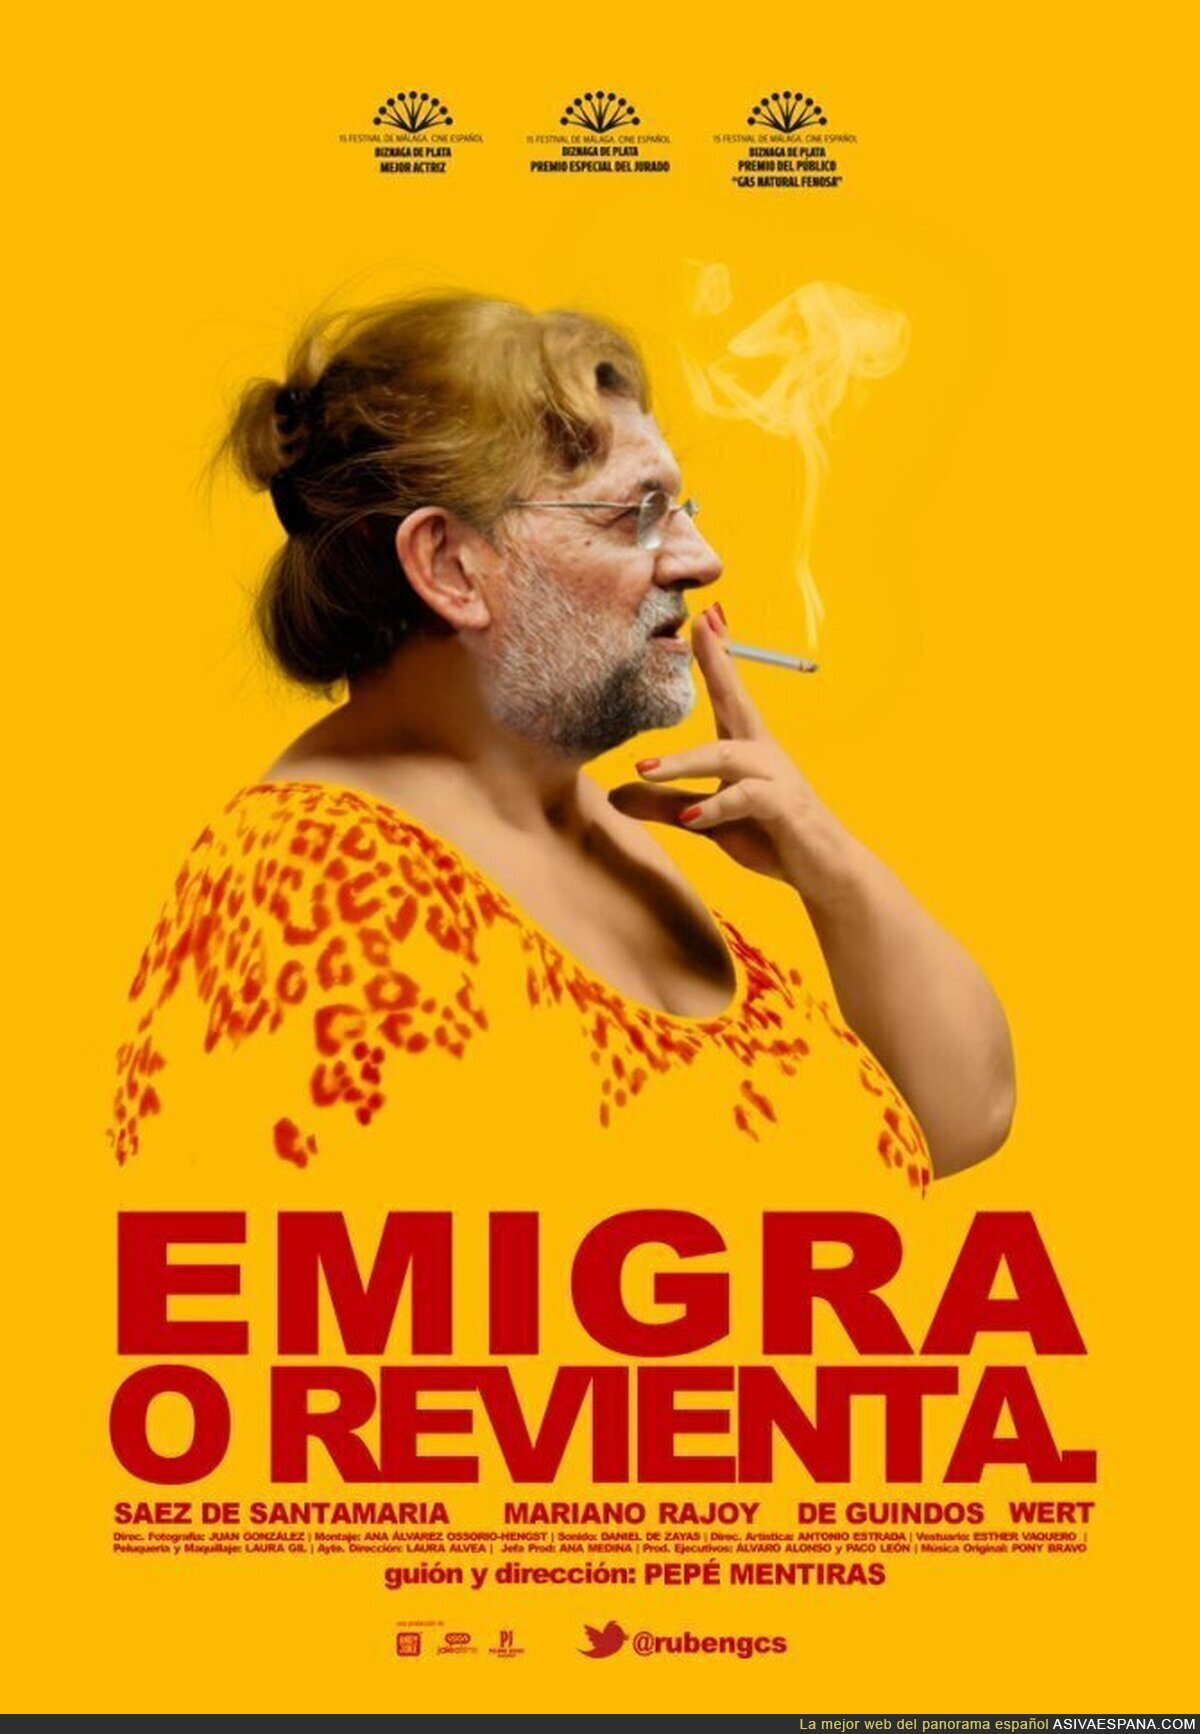 La próxima pelicula de Rajoy